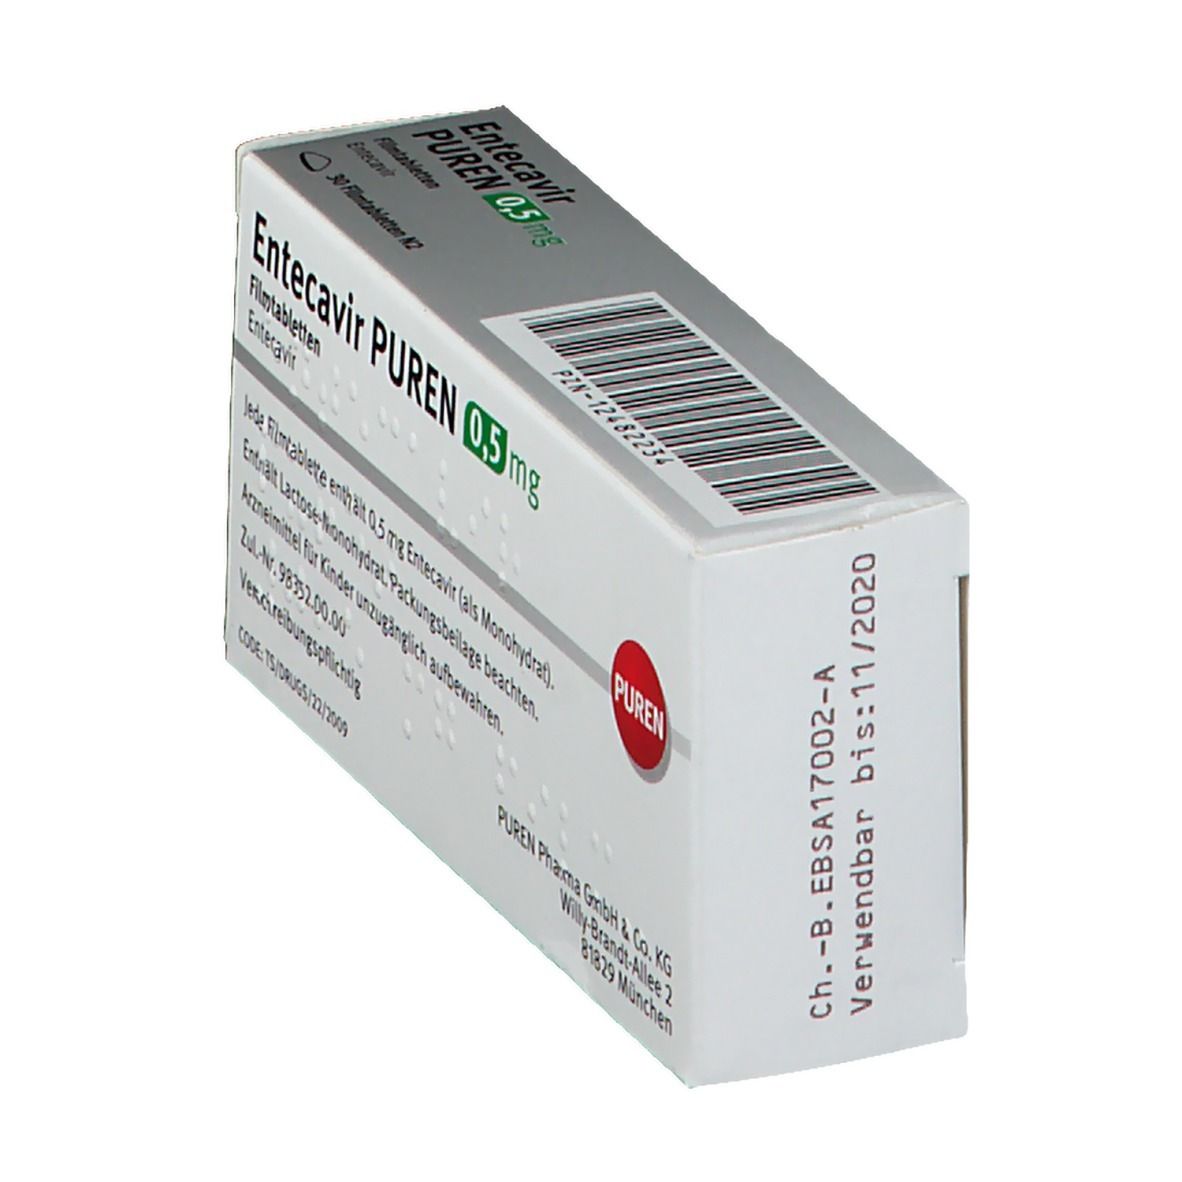 Entecavir PUREN 0,5 mg